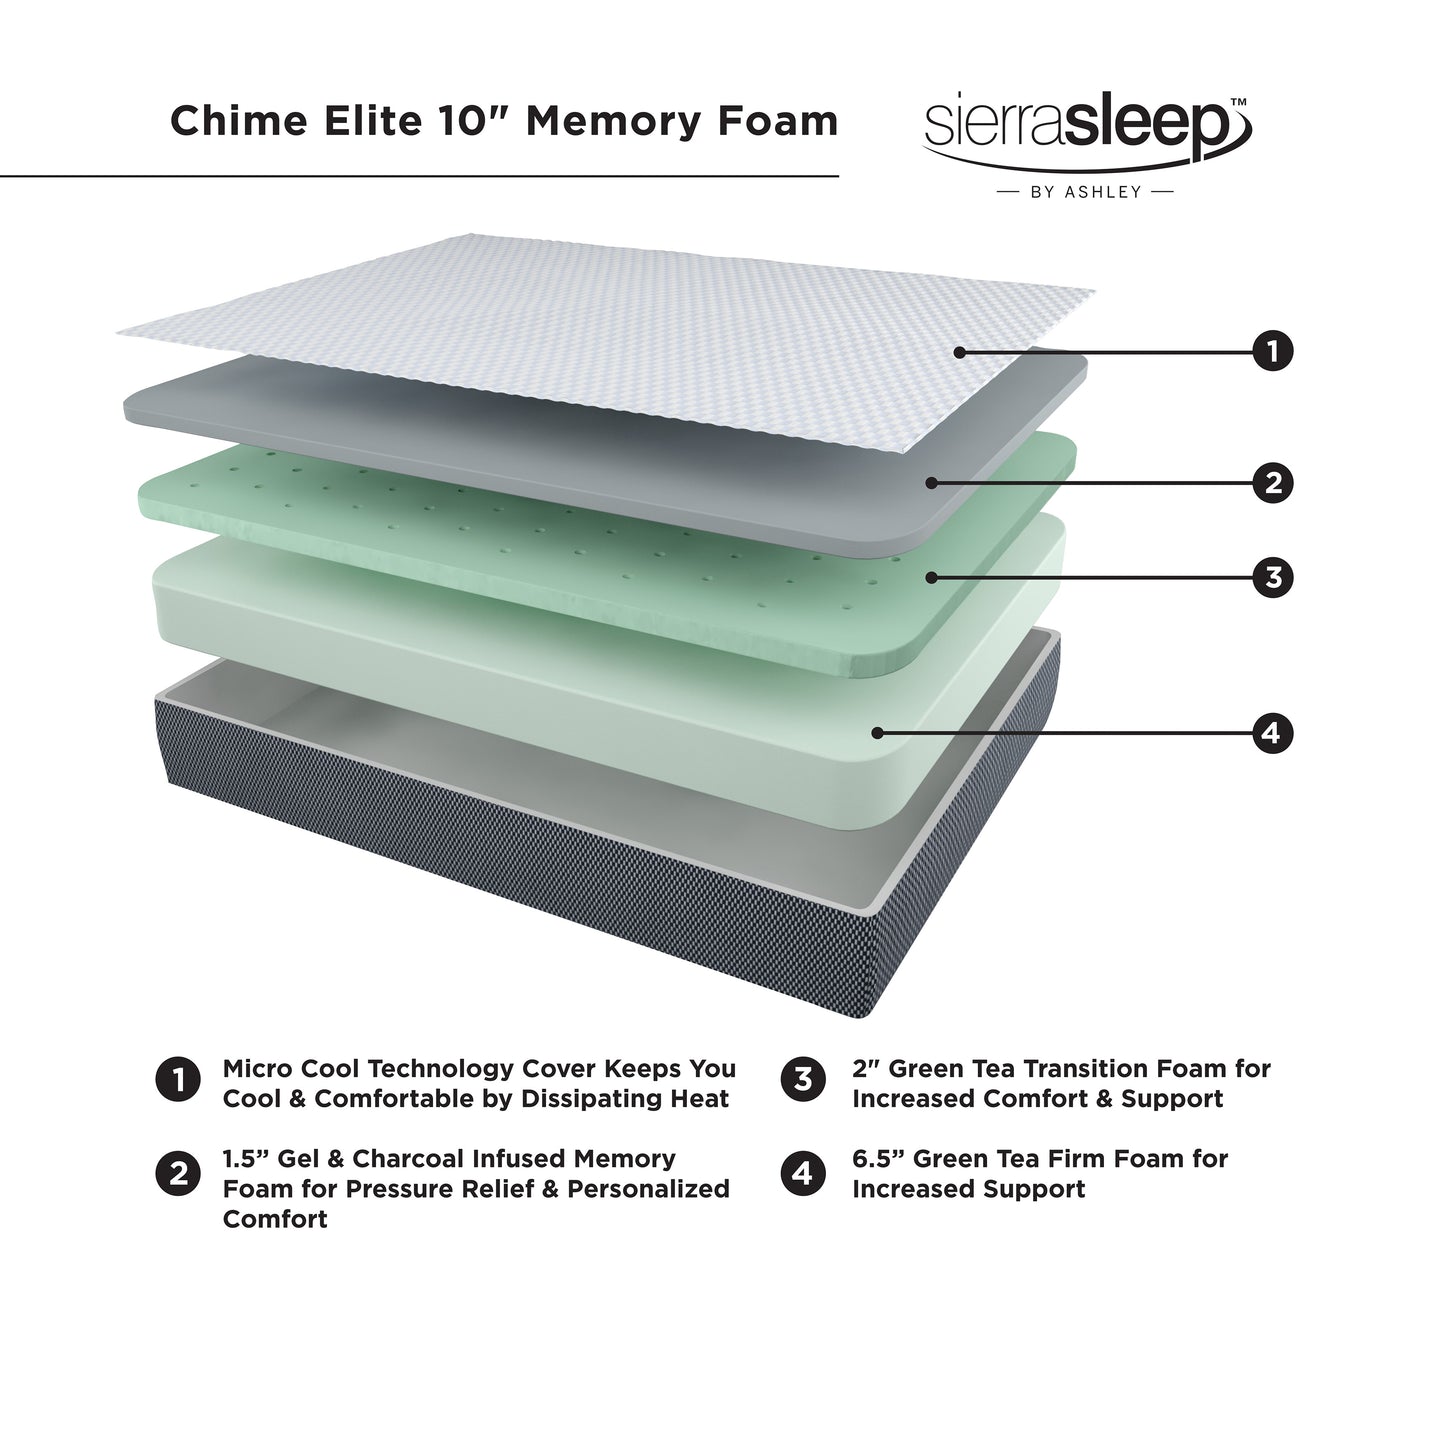 10" Chime Elite Memory Foam Mattress